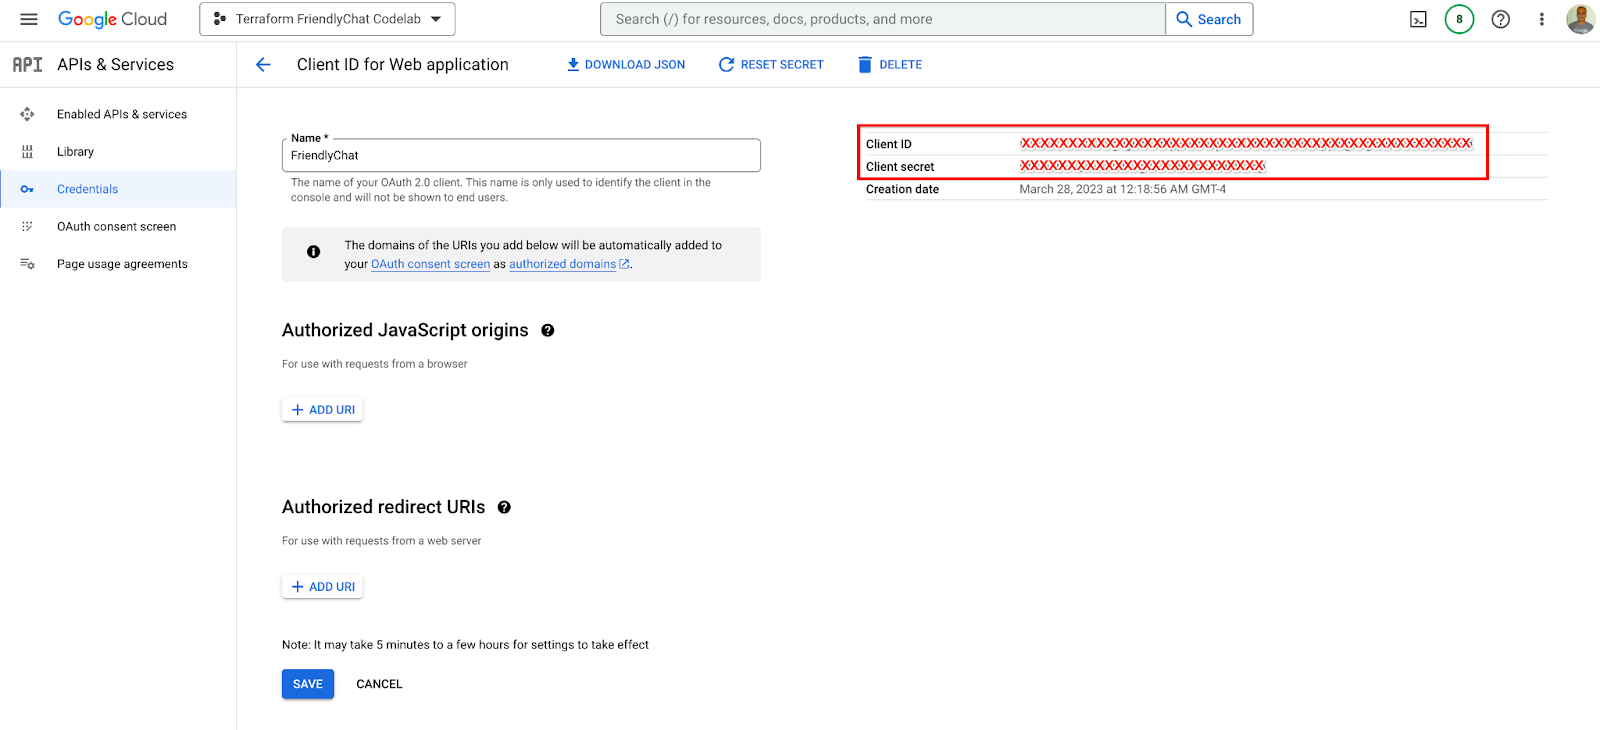 从 Google Cloud 控制台的“凭据”页面获取 OAuth2 客户端 ID 和密钥